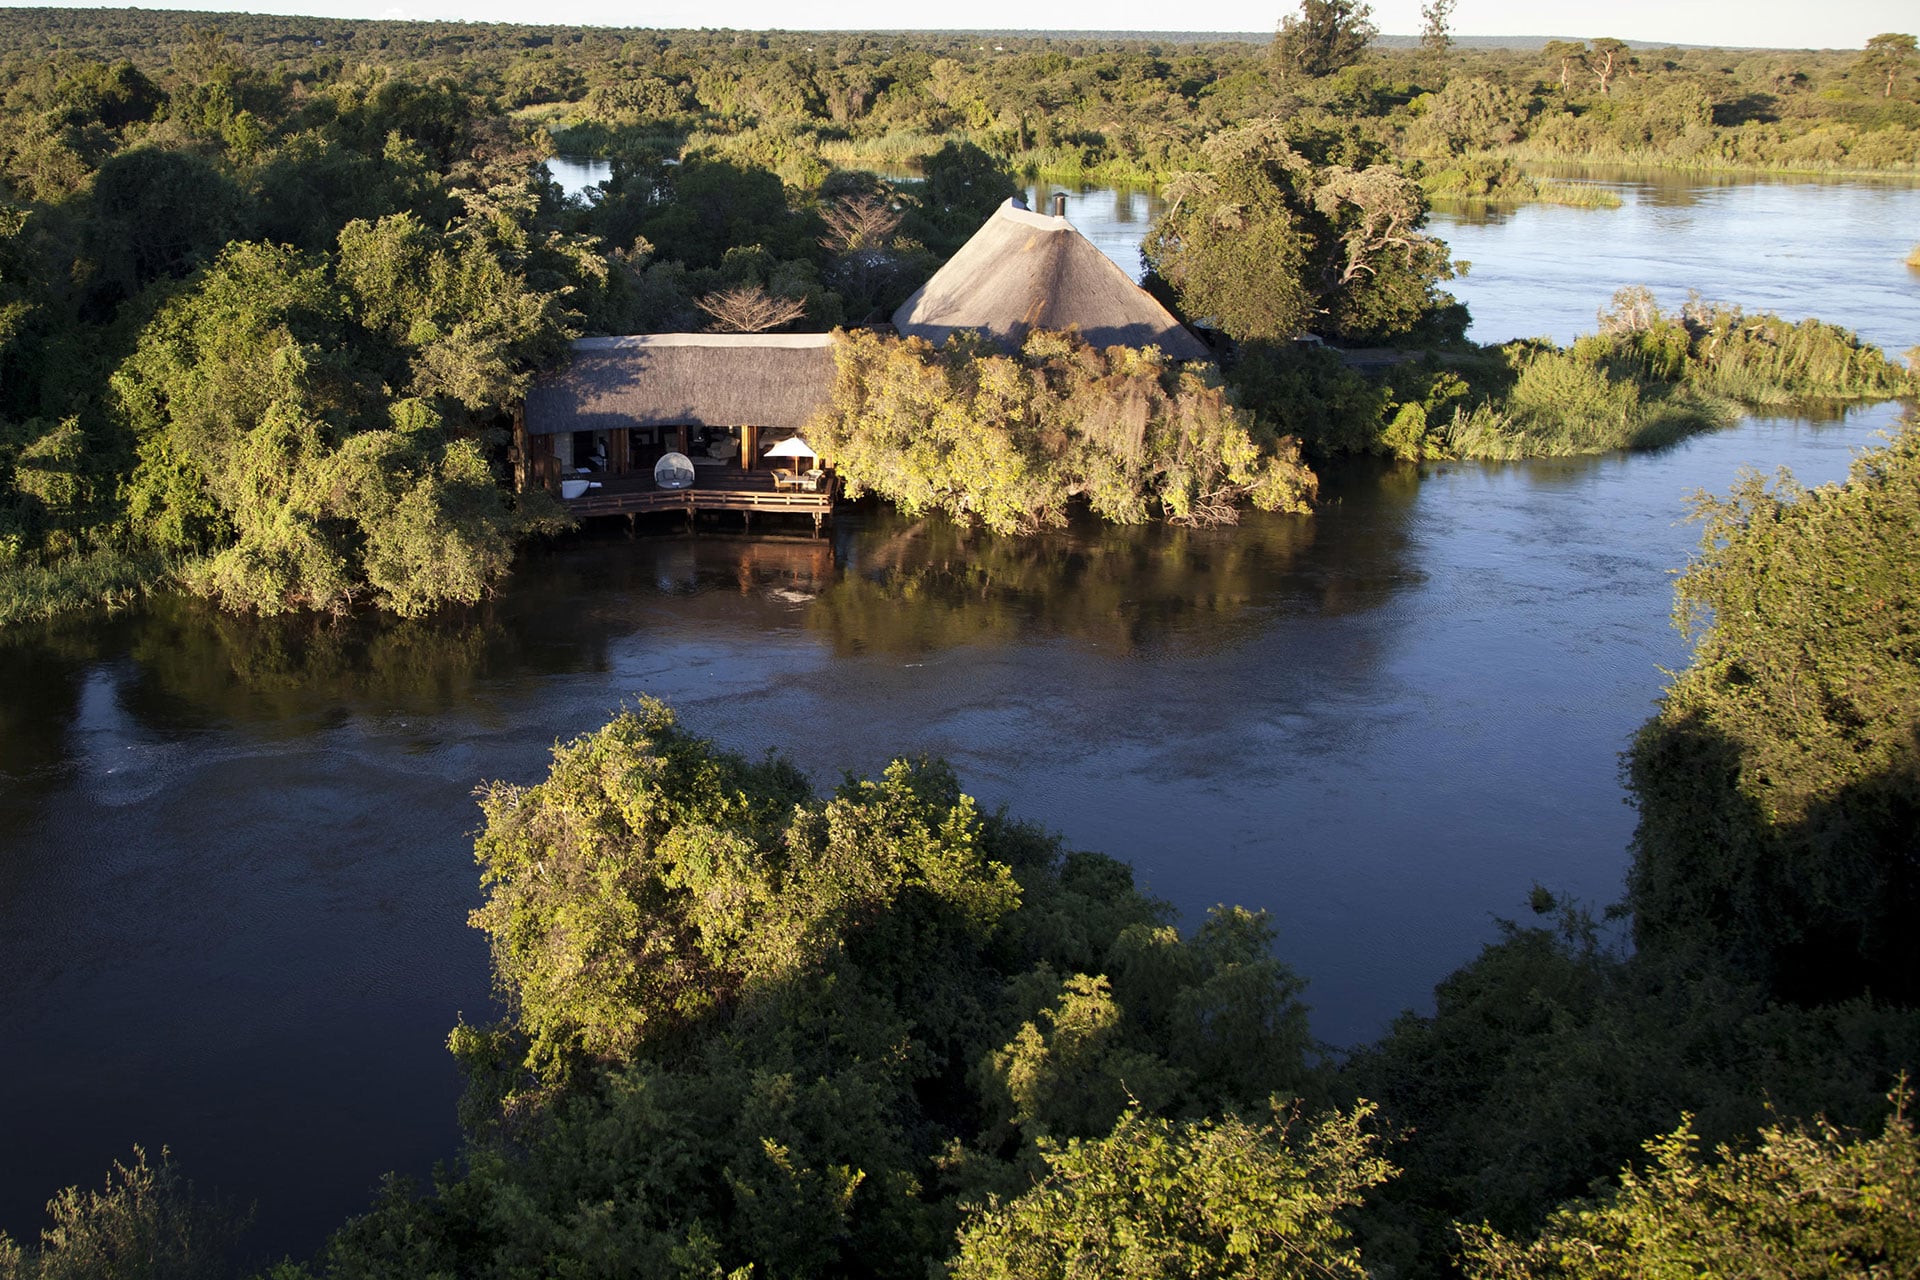 A view of Royal Chundu Zambezi Island Lodge and the Zambezi River